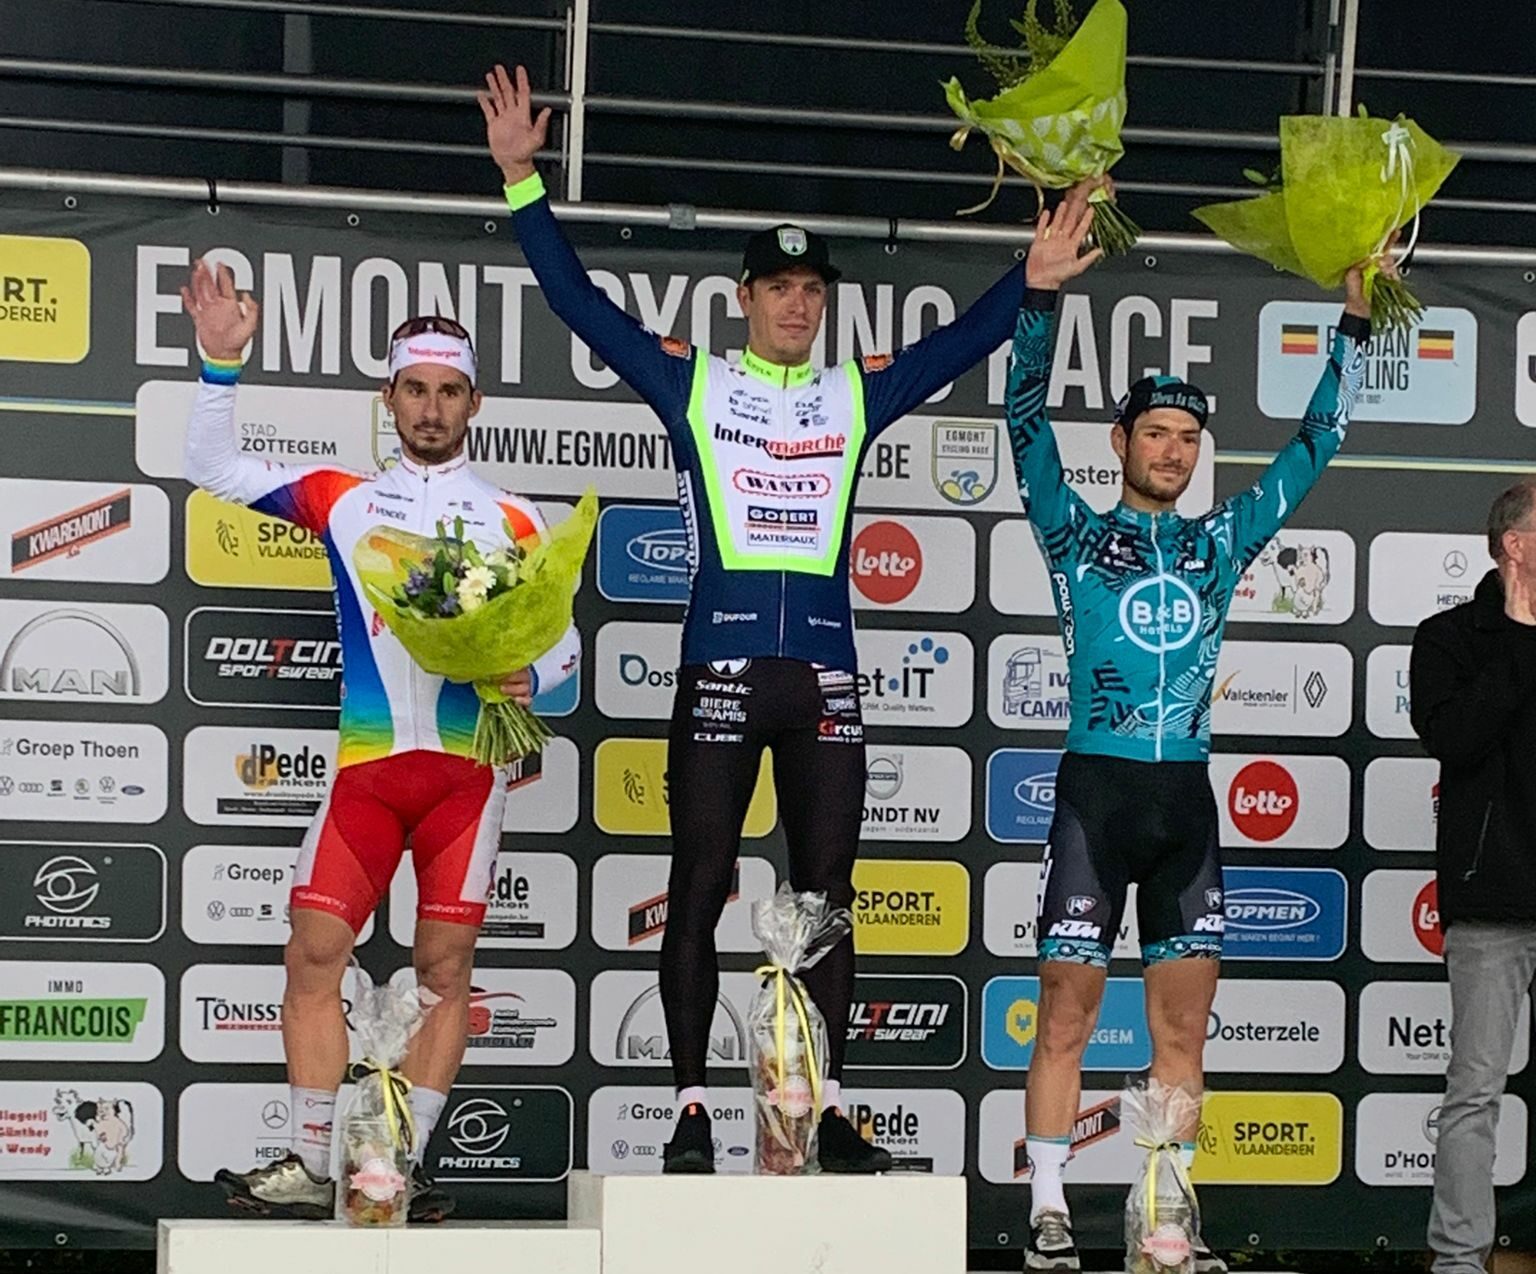 Данни ван Поппель выиграл однодневную велогонку Egmont Cycling Race